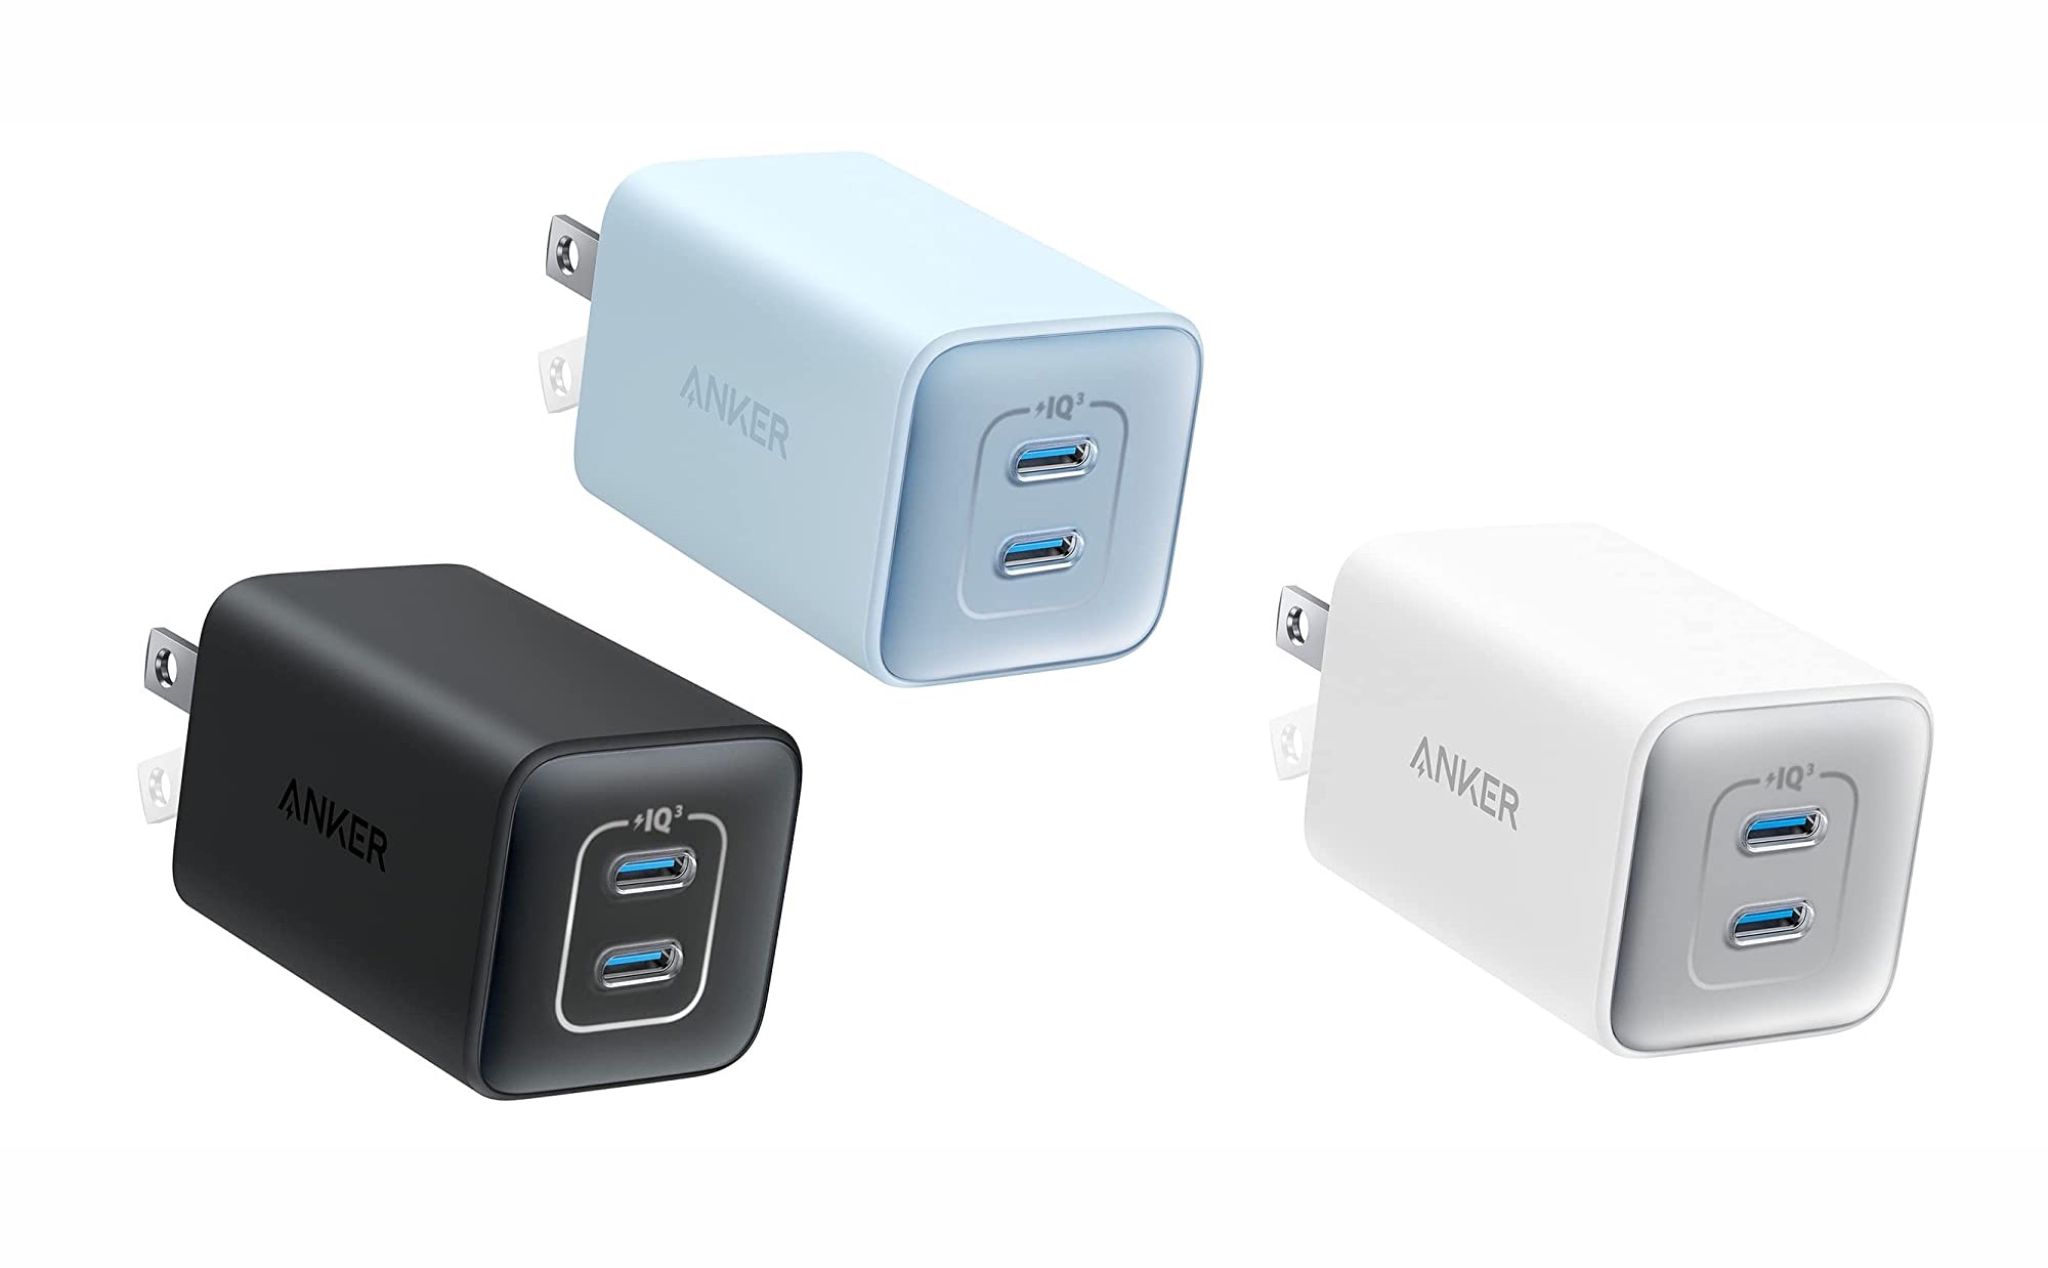 Anker ra mắt Nano 3 GaN 47W, 2 cổng USB-C, 3 màu sắc, giá 39.99 USD